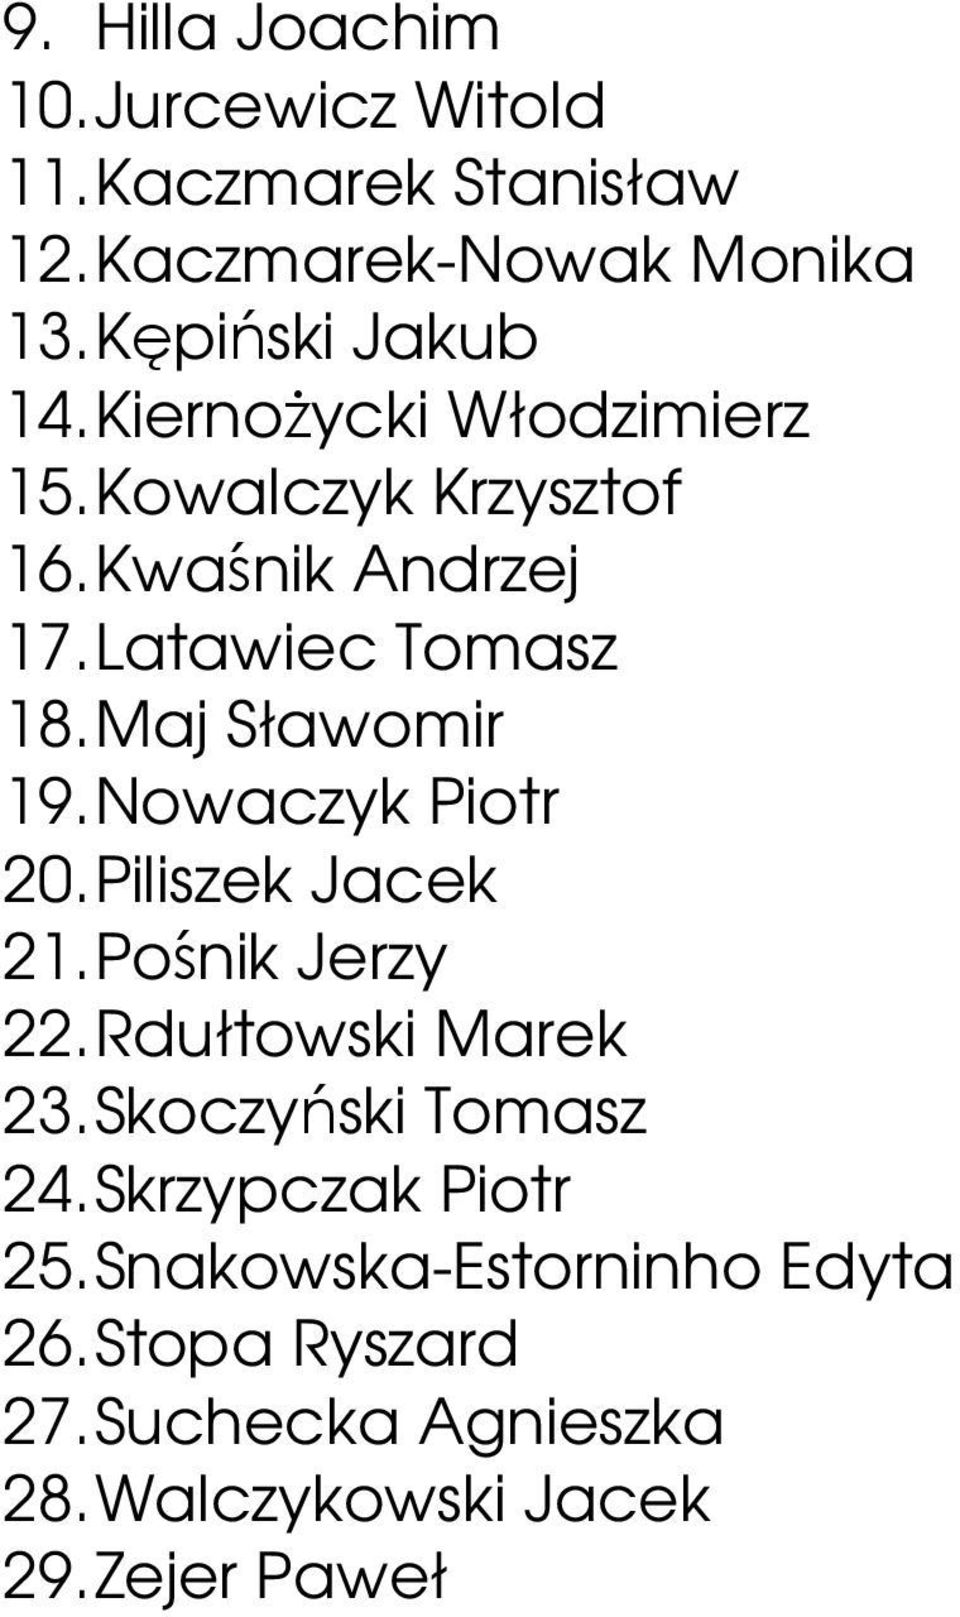 Nowaczyk Piotr 20. Piliszek Jacek 21. Pośnik Jerzy 22. Rdułtowski Marek 23. Skoczyński Tomasz 24.